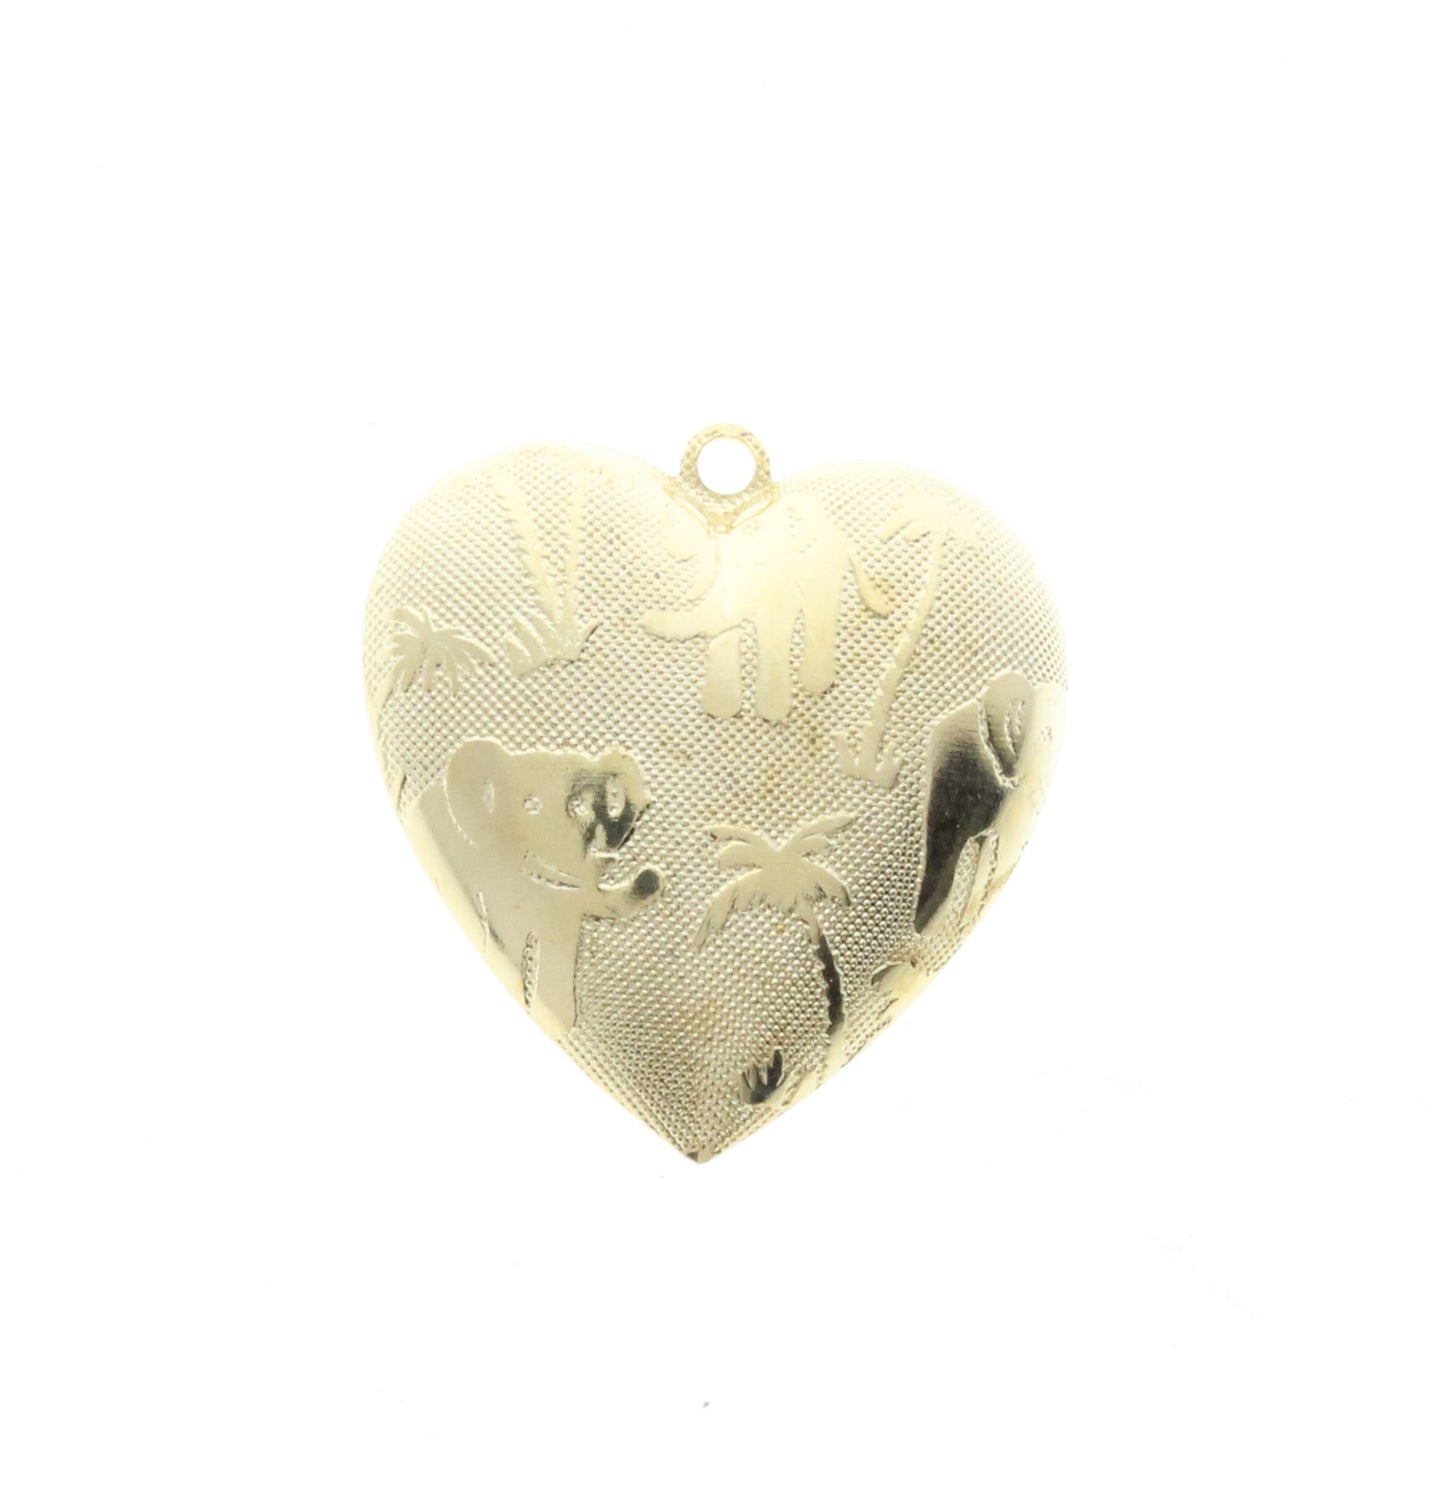 Elephant & Palm Heart Charm, pk/6